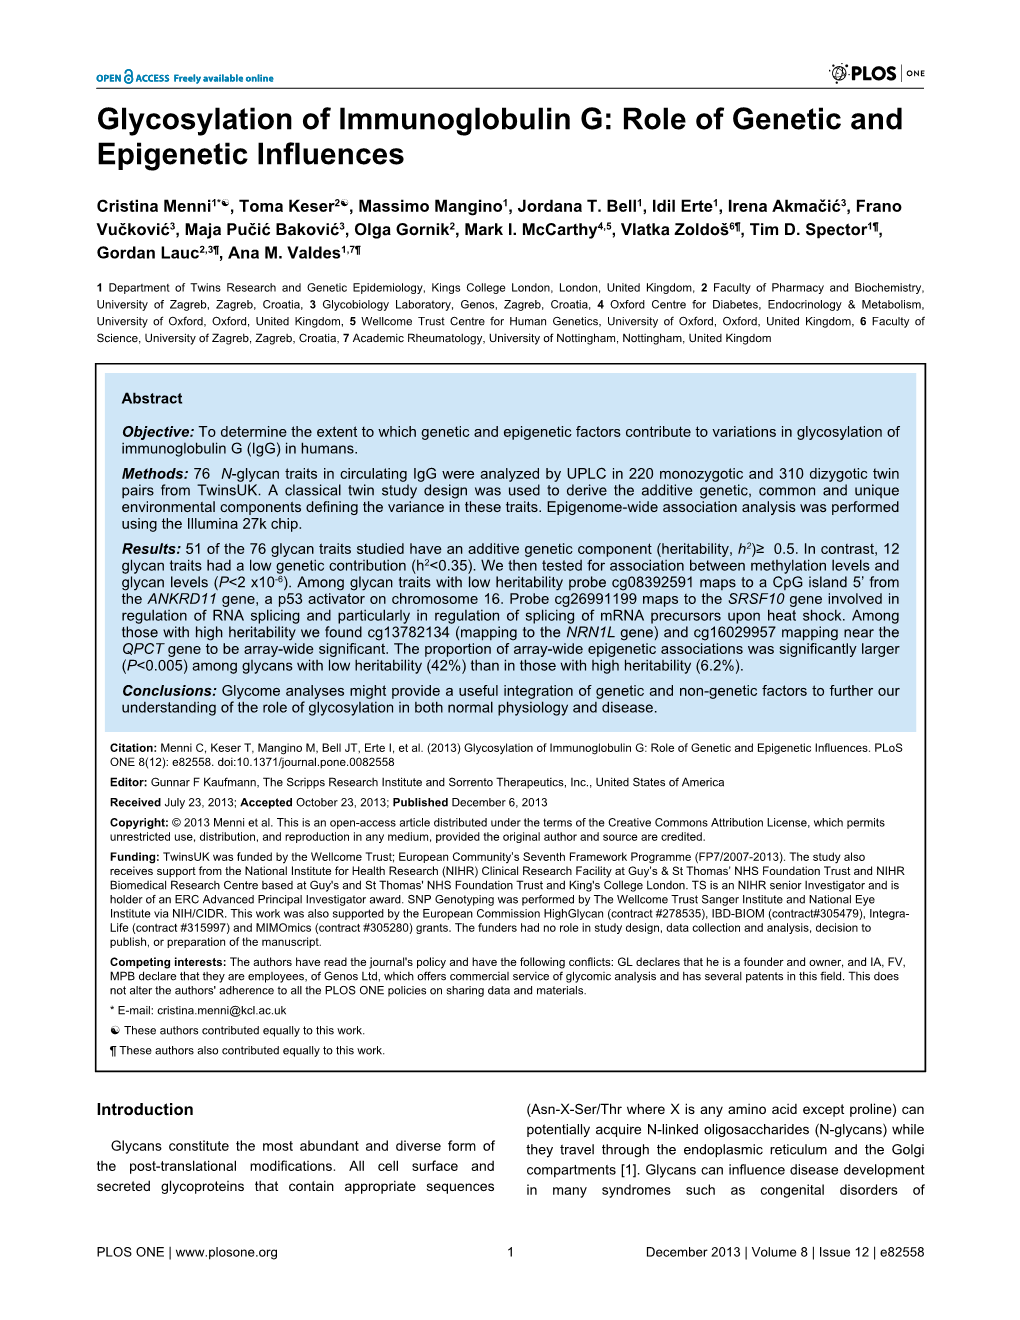 Glycosylation of Immunoglobulin G: Role of Genetic and Epigenetic Influences